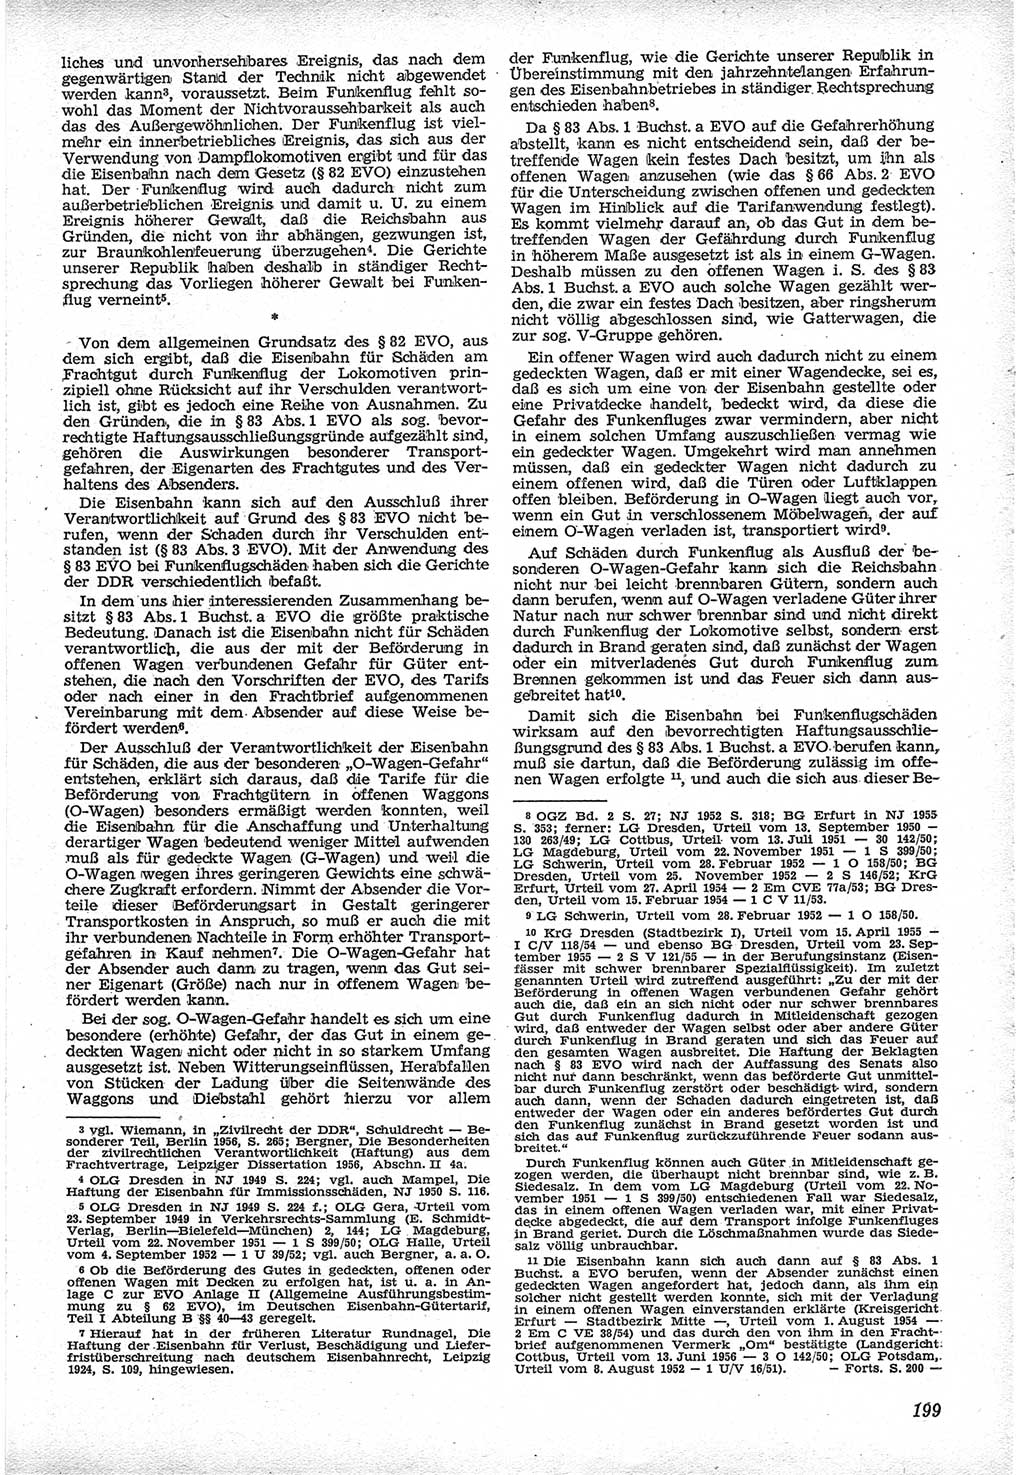 Neue Justiz (NJ), Zeitschrift für Recht und Rechtswissenschaft [Deutsche Demokratische Republik (DDR)], 12. Jahrgang 1958, Seite 199 (NJ DDR 1958, S. 199)